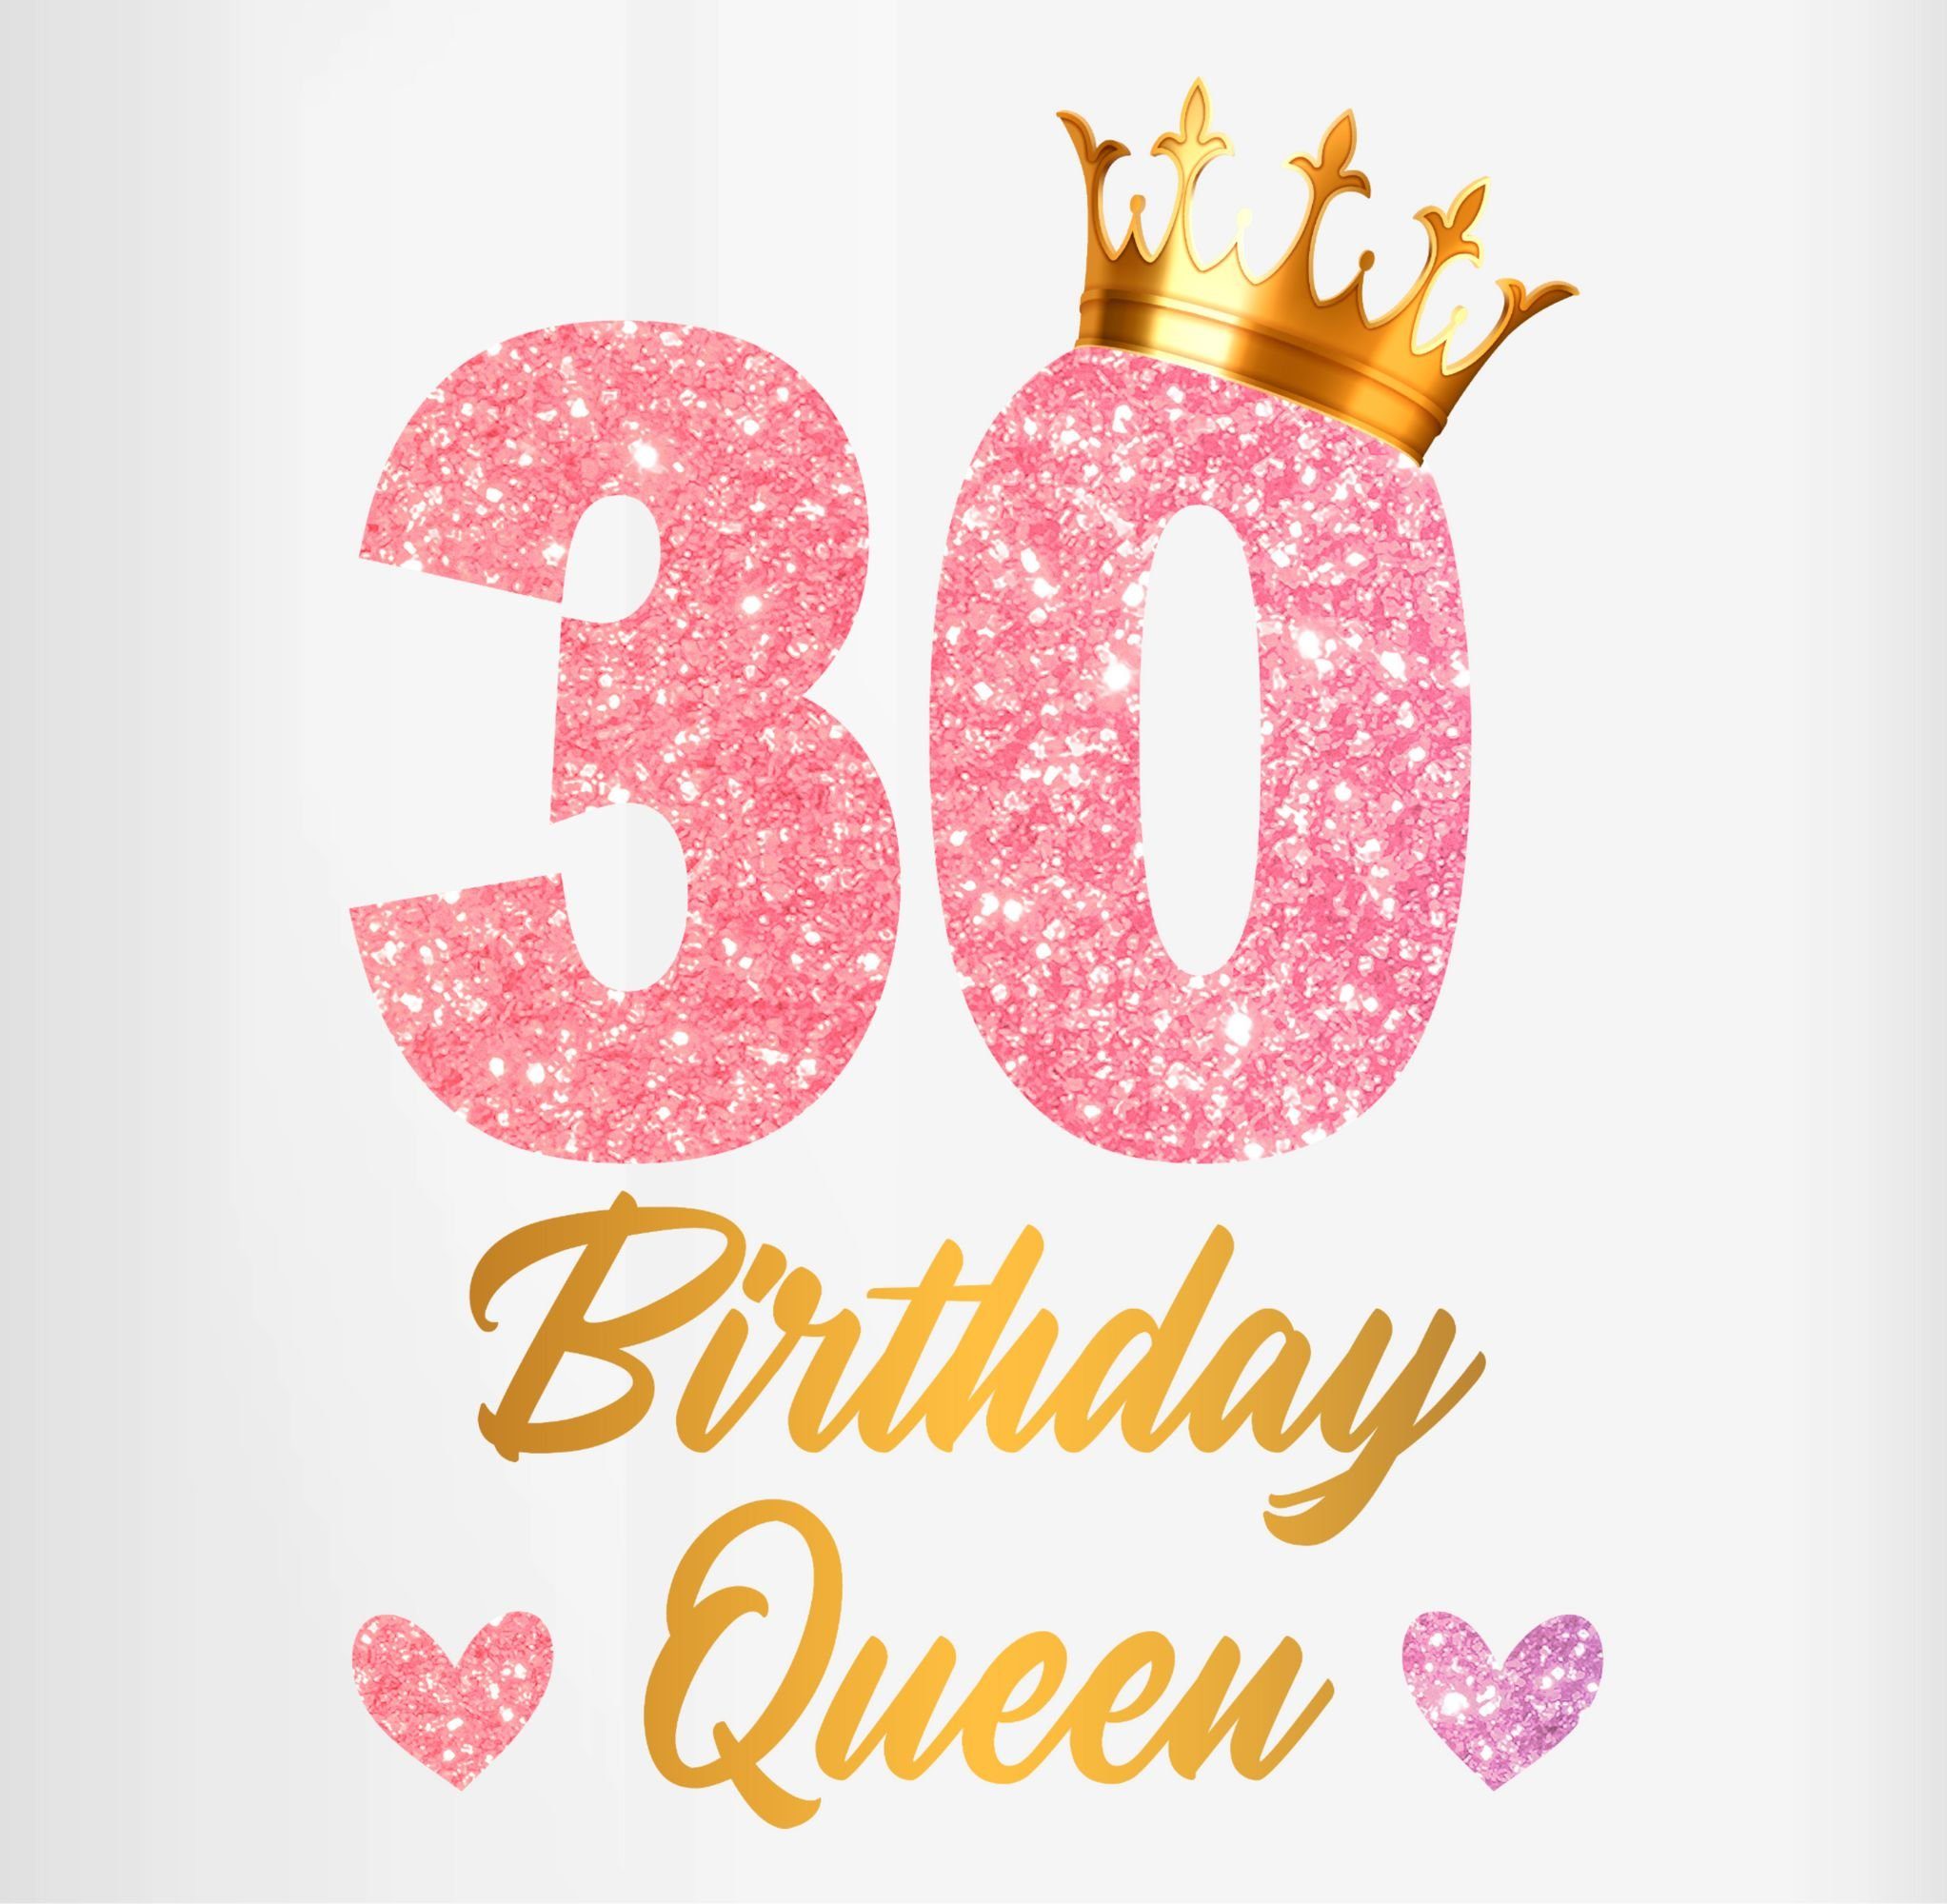 Rosa 30, 30. Königin Queen Geburtstag Shirtracer 1 Geburtstags Tasse Geburtstagsgeschenk 30 Birthday Tasse Keramik,